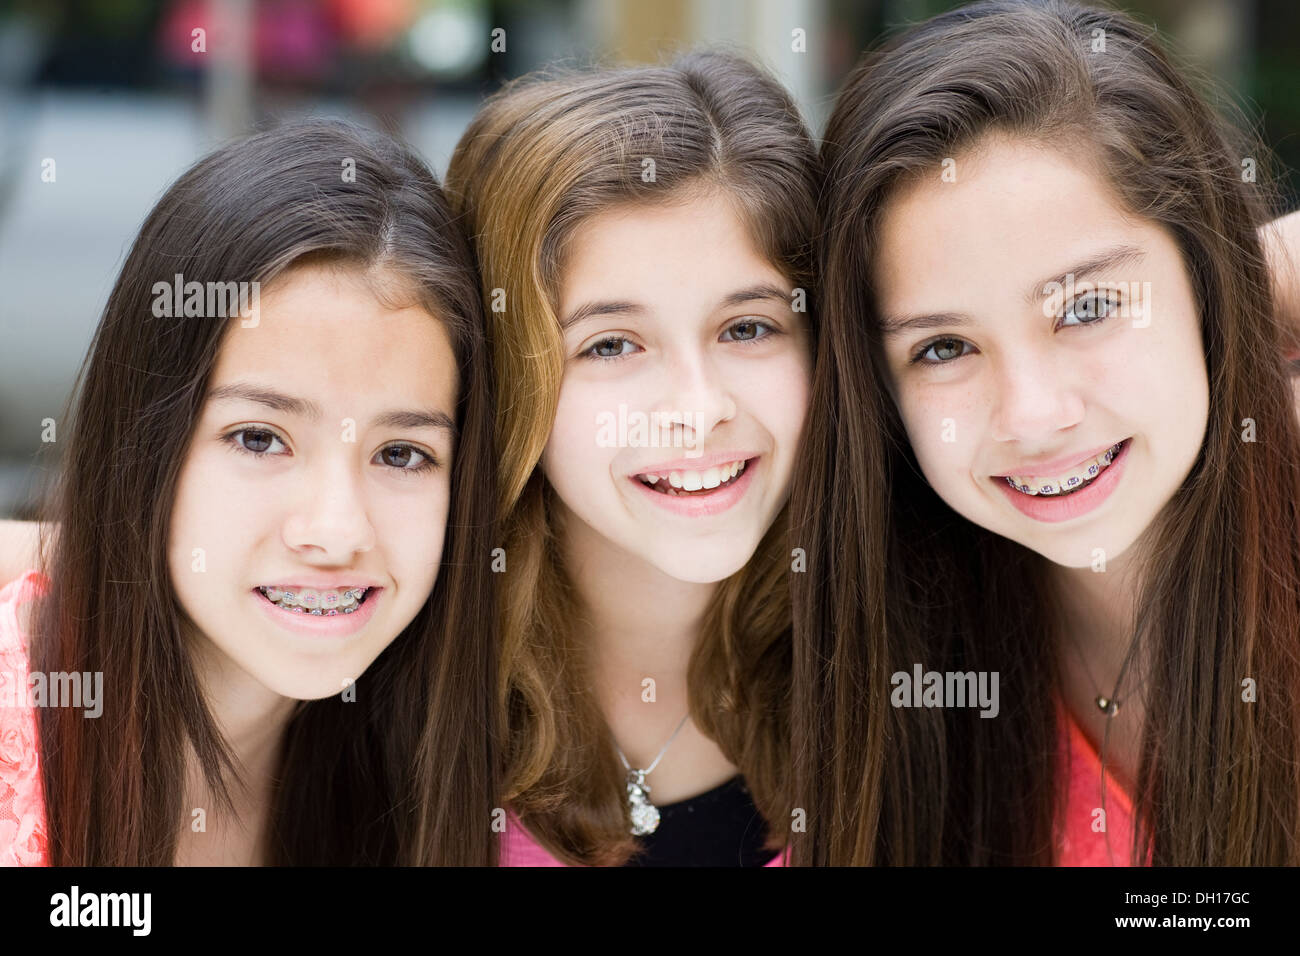 Hispanic girls smiling together Stock Photo